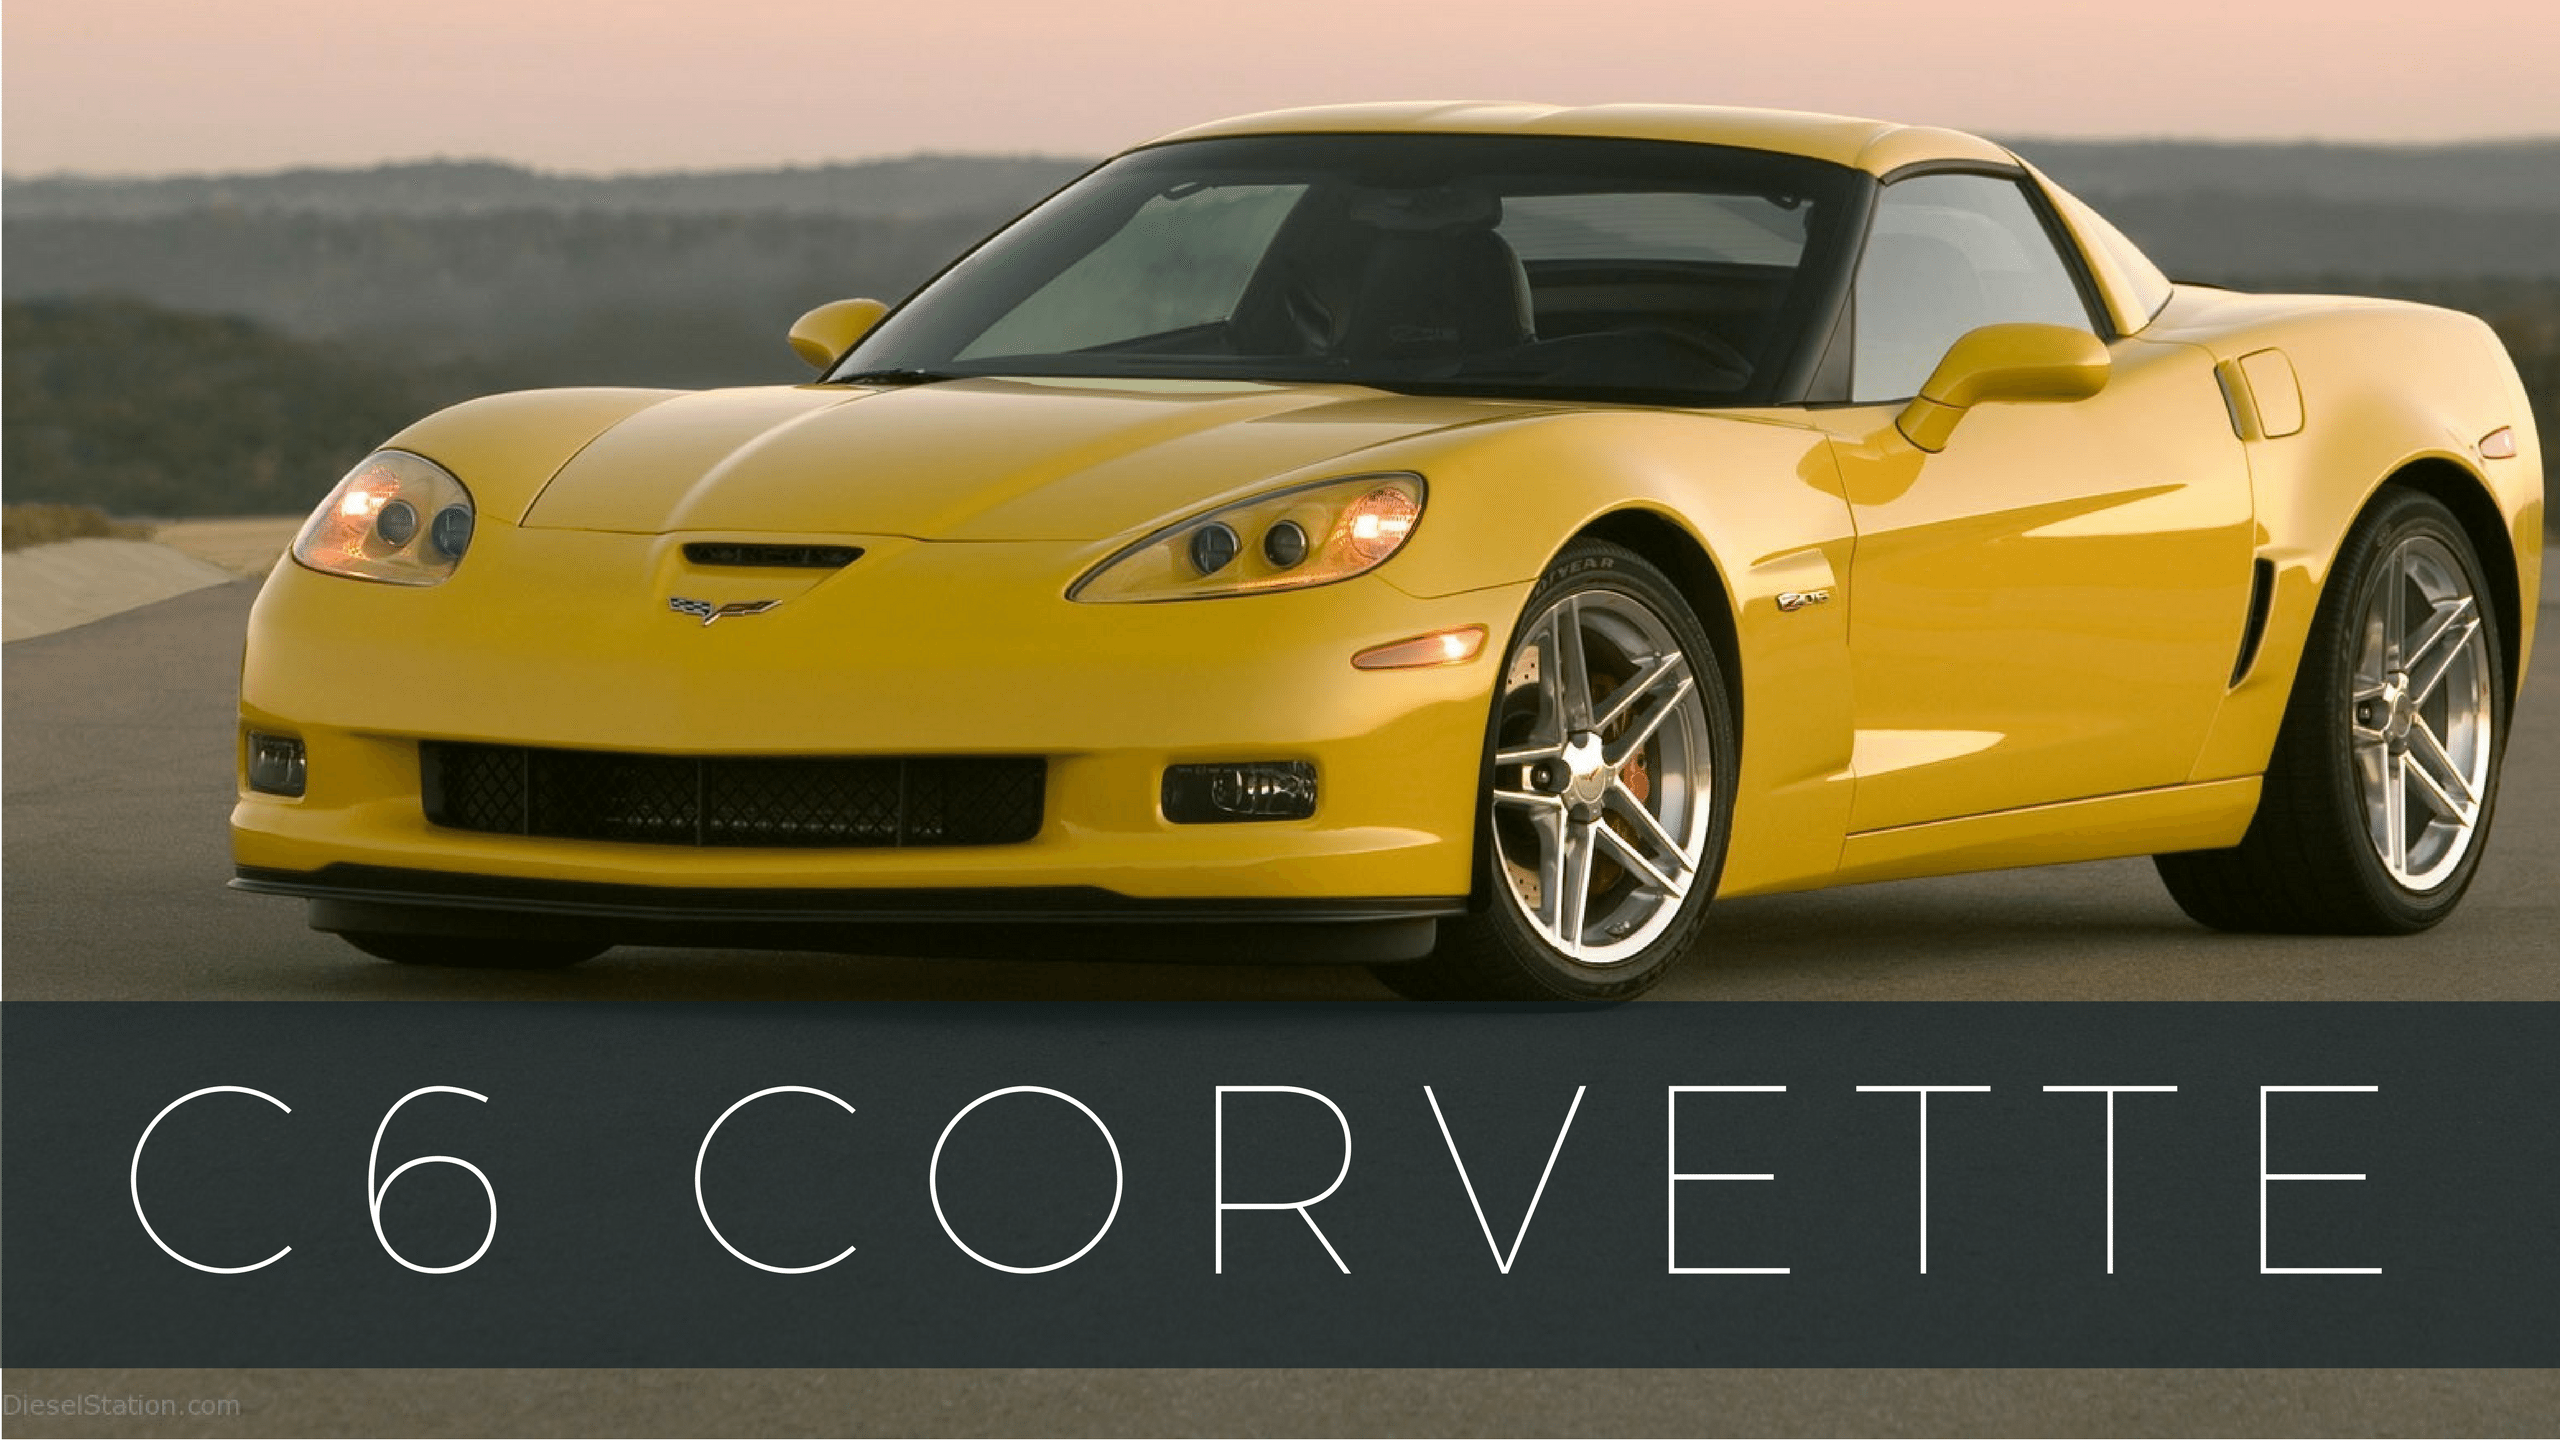 Corvette models c6